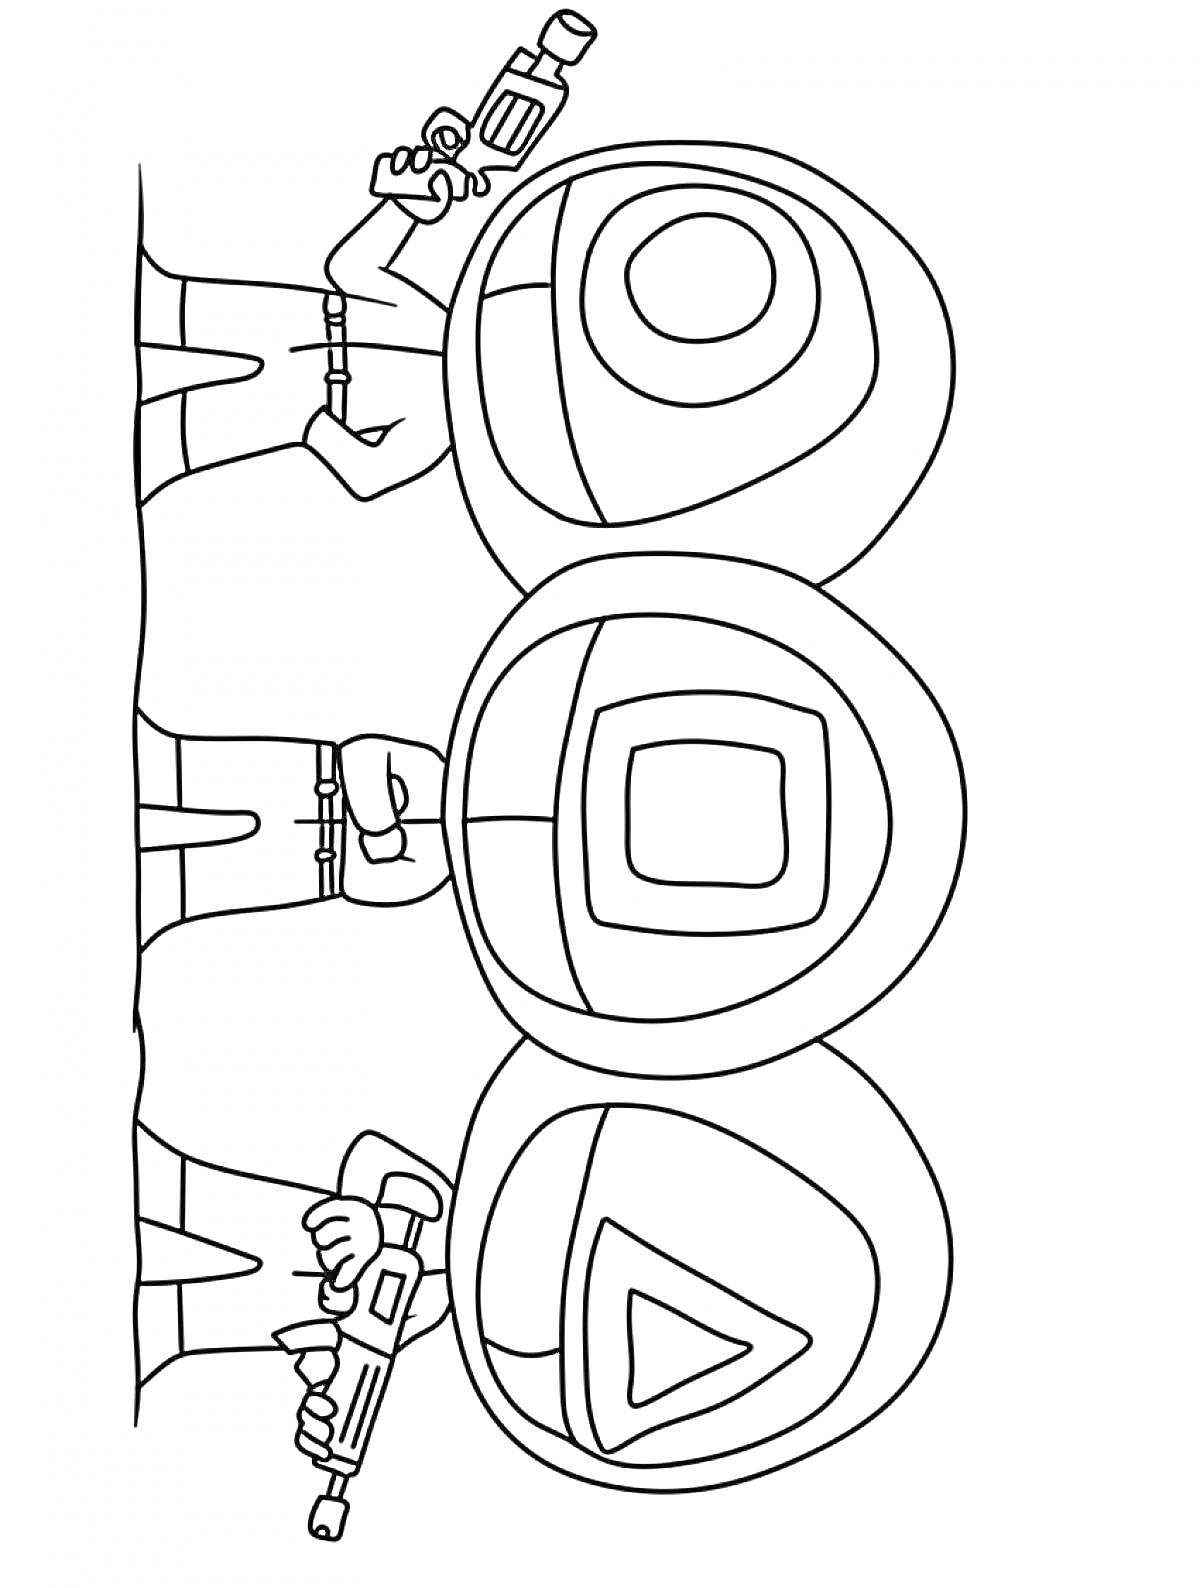 Три охранника с масками в форме круга, квадрата и треугольника, держащие оружие